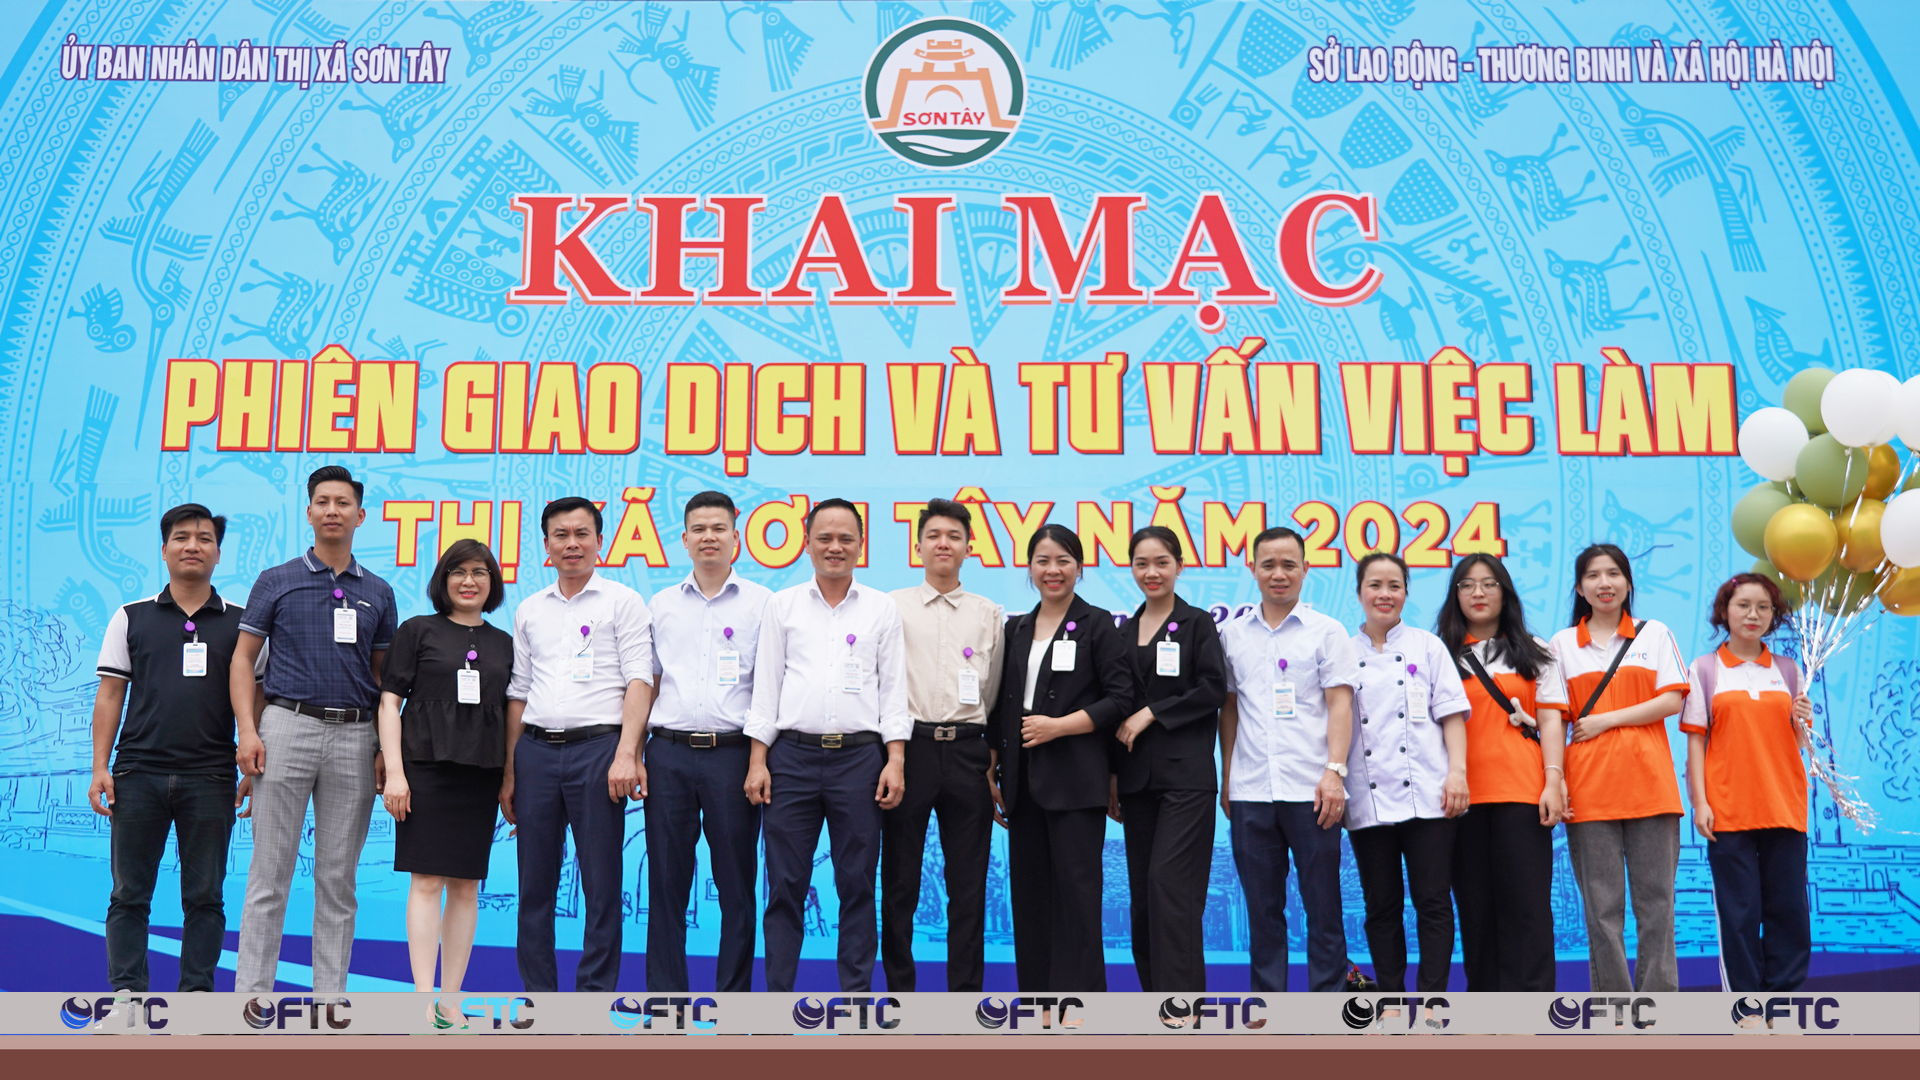 Gần 2300 chỉ tiêu tuyển dụng tại phiên giao dịch việc làm thị xã Sơn Tây, Hà Nội